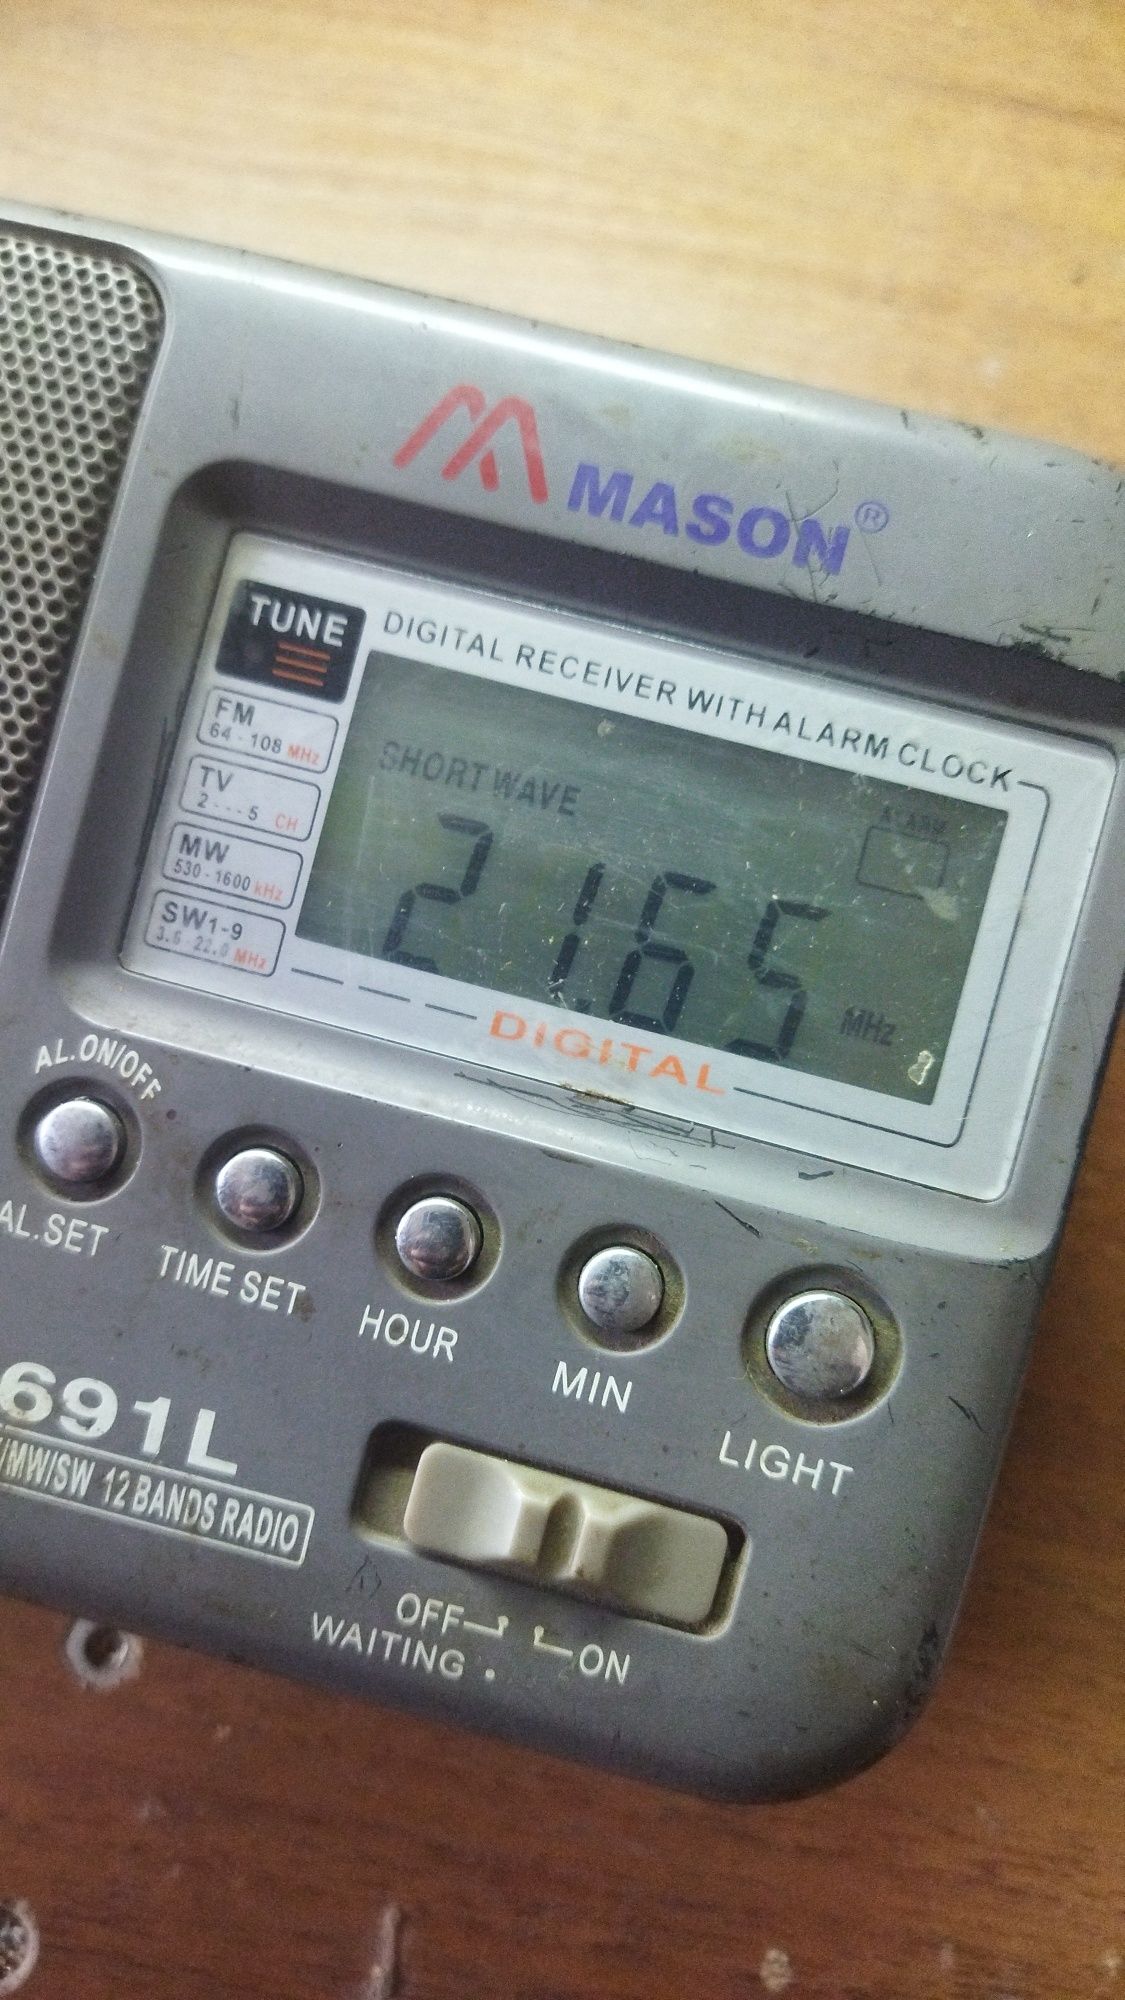 Радиоприемник Mason R691L